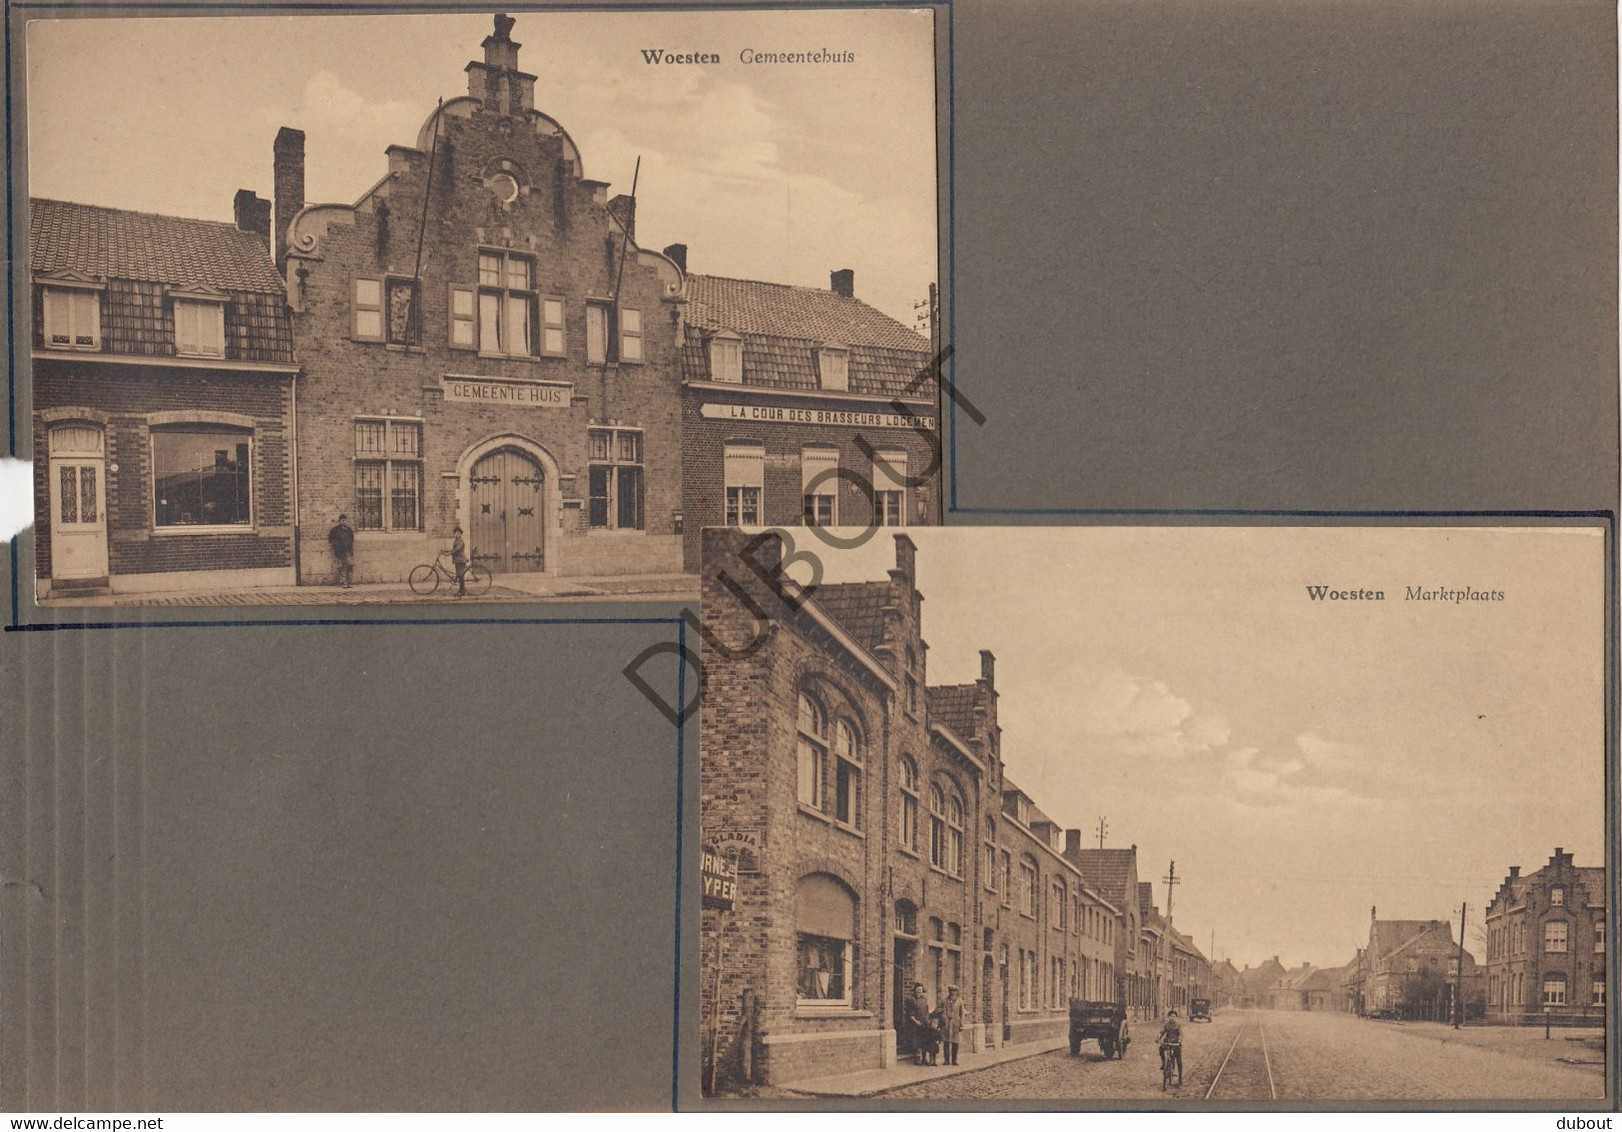 2 Postkaarten/Cartes Postales - WOESTEN/Vleteren - Gemeentehuis & Marktplaats (V942) - Vleteren